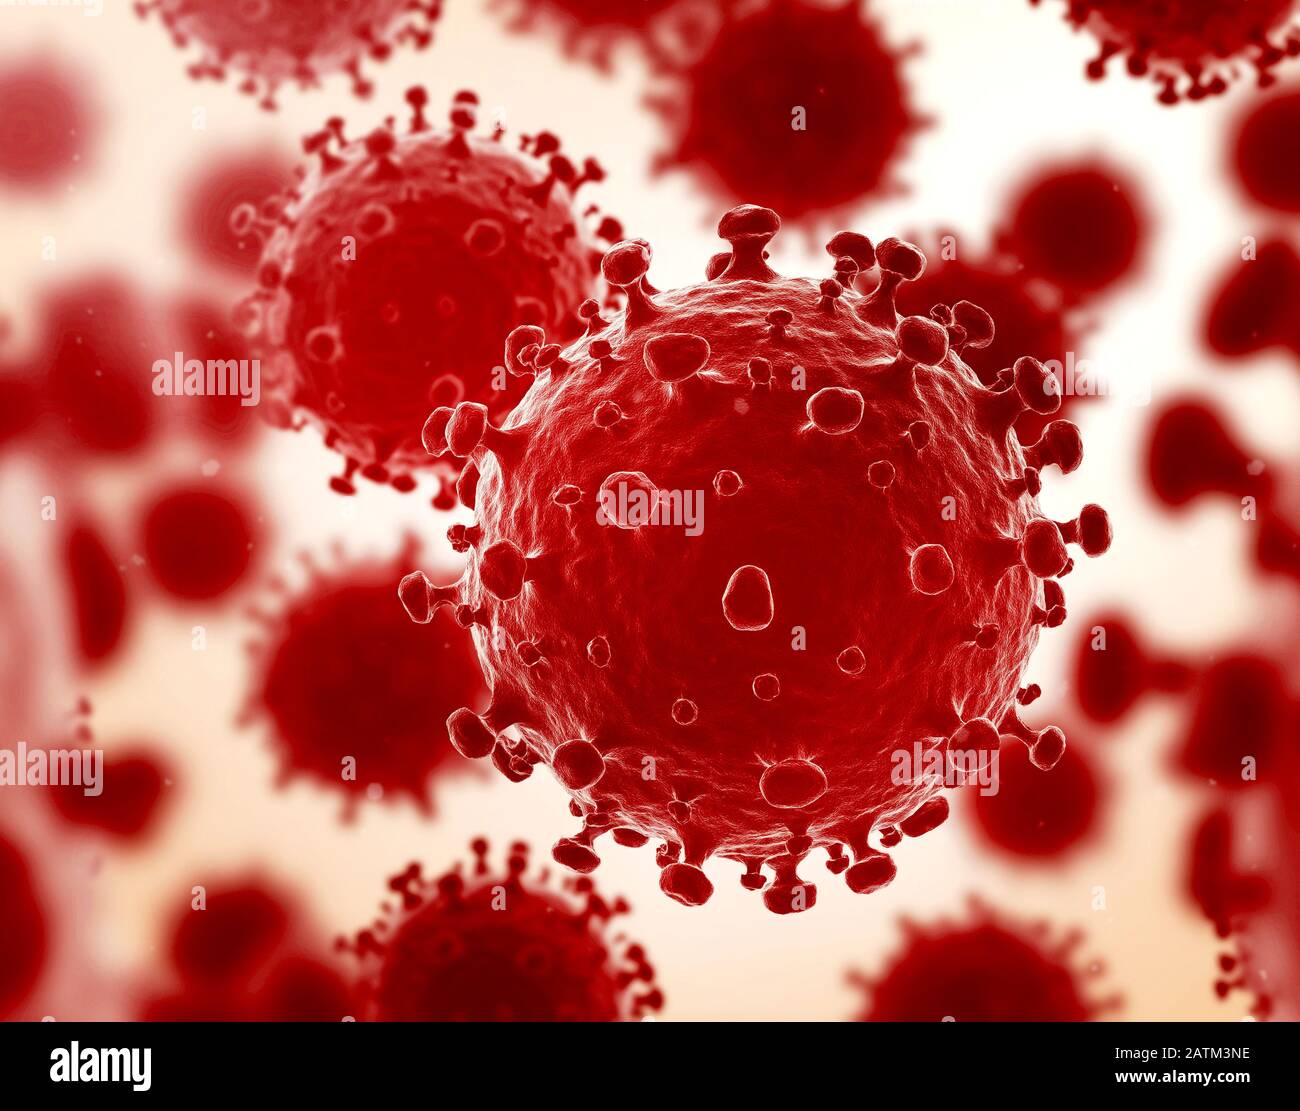 Coronavirus Stock Photo